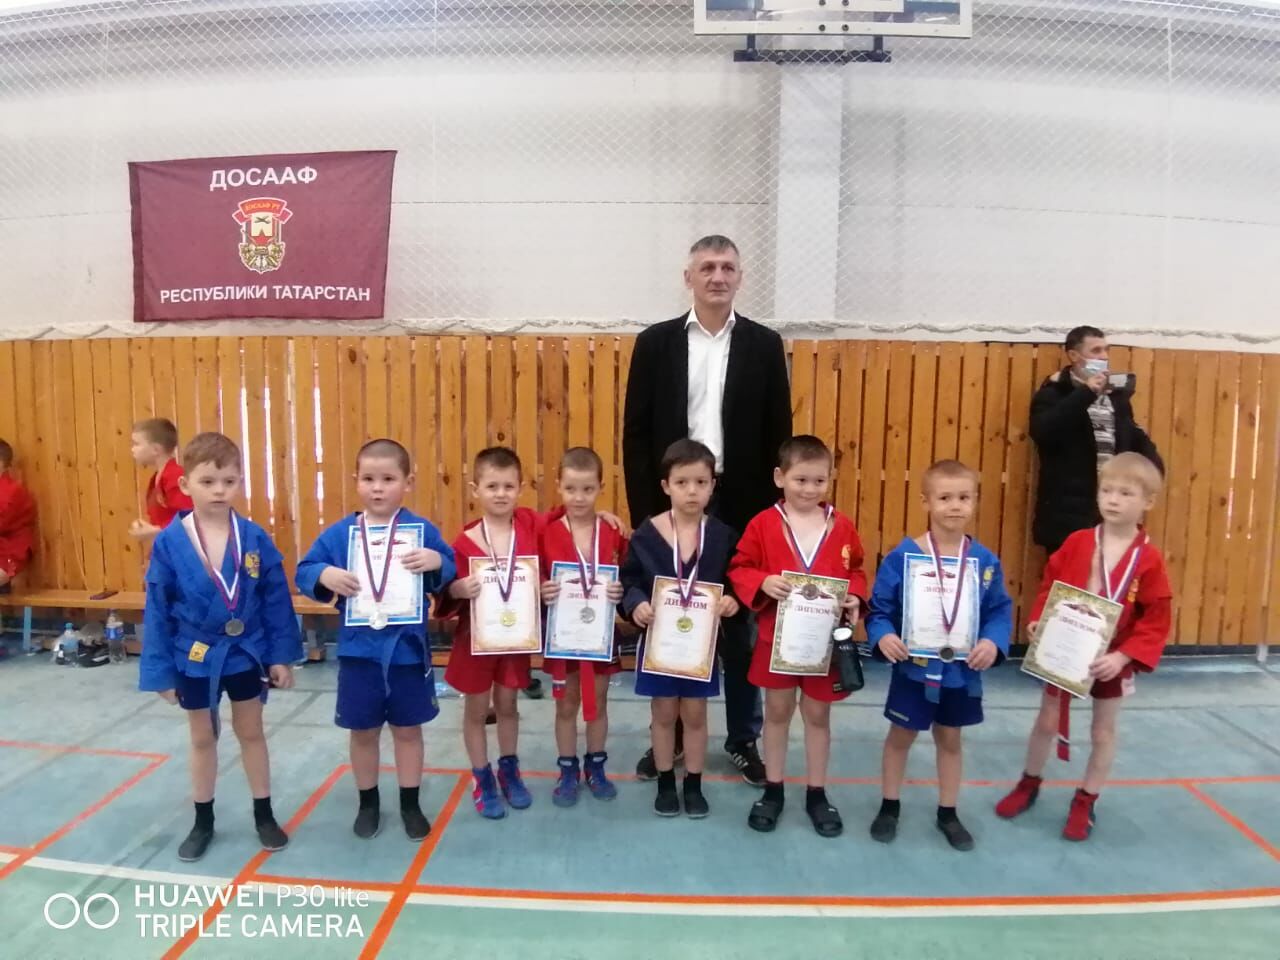 И вновь успех: медаль у воспитанника спортивного клуба из Камского Устья